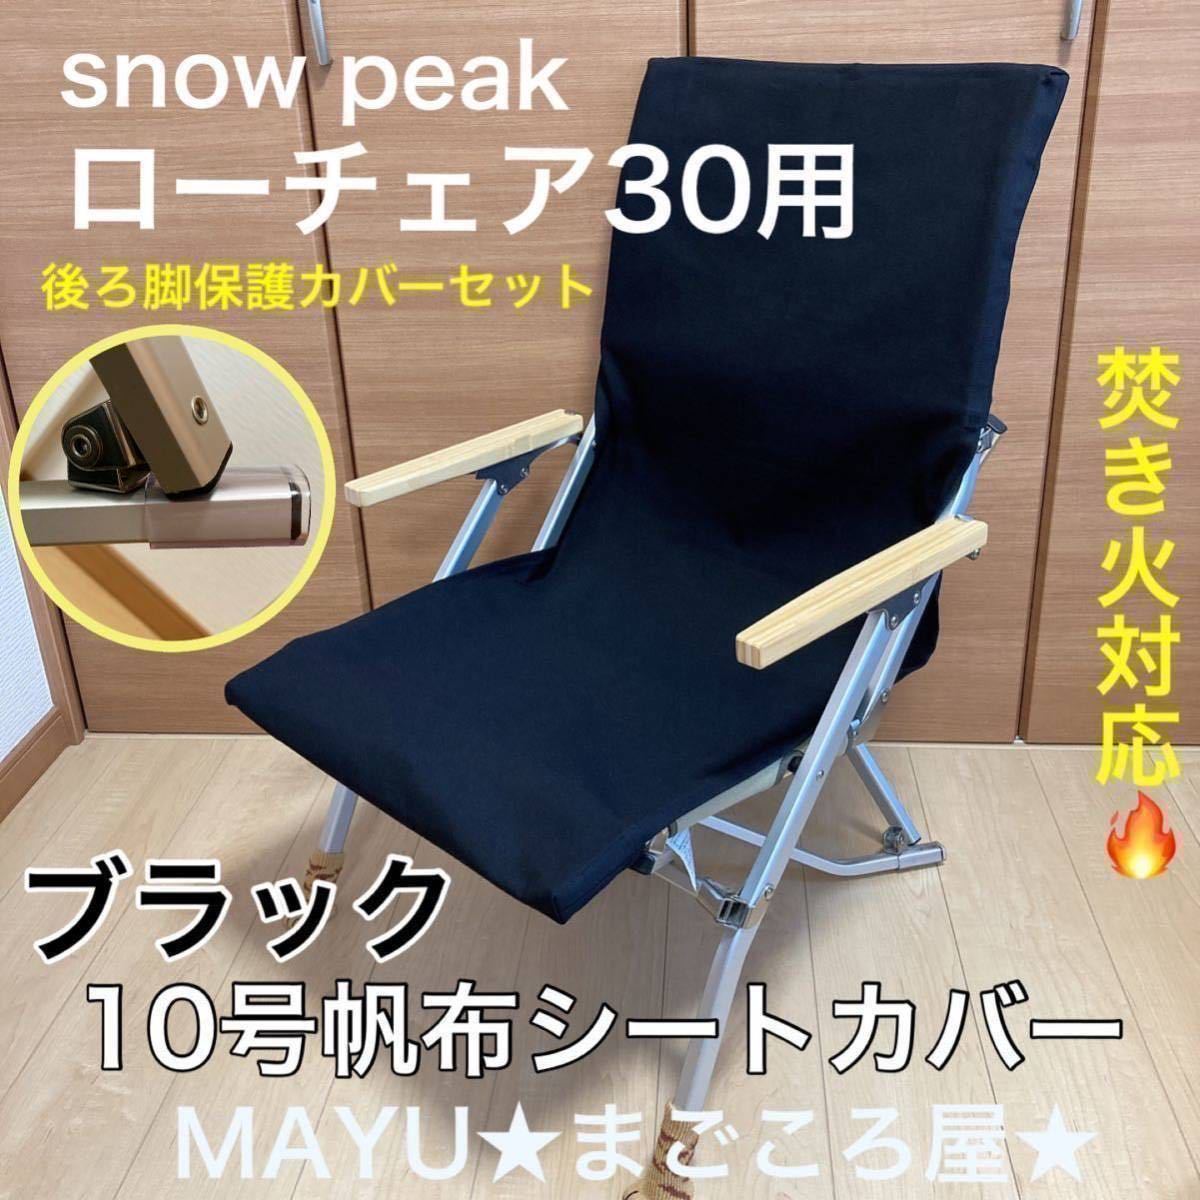 日本在庫 - スノーピークローチェアー30ブラウン 新品未使用2脚 - 安い